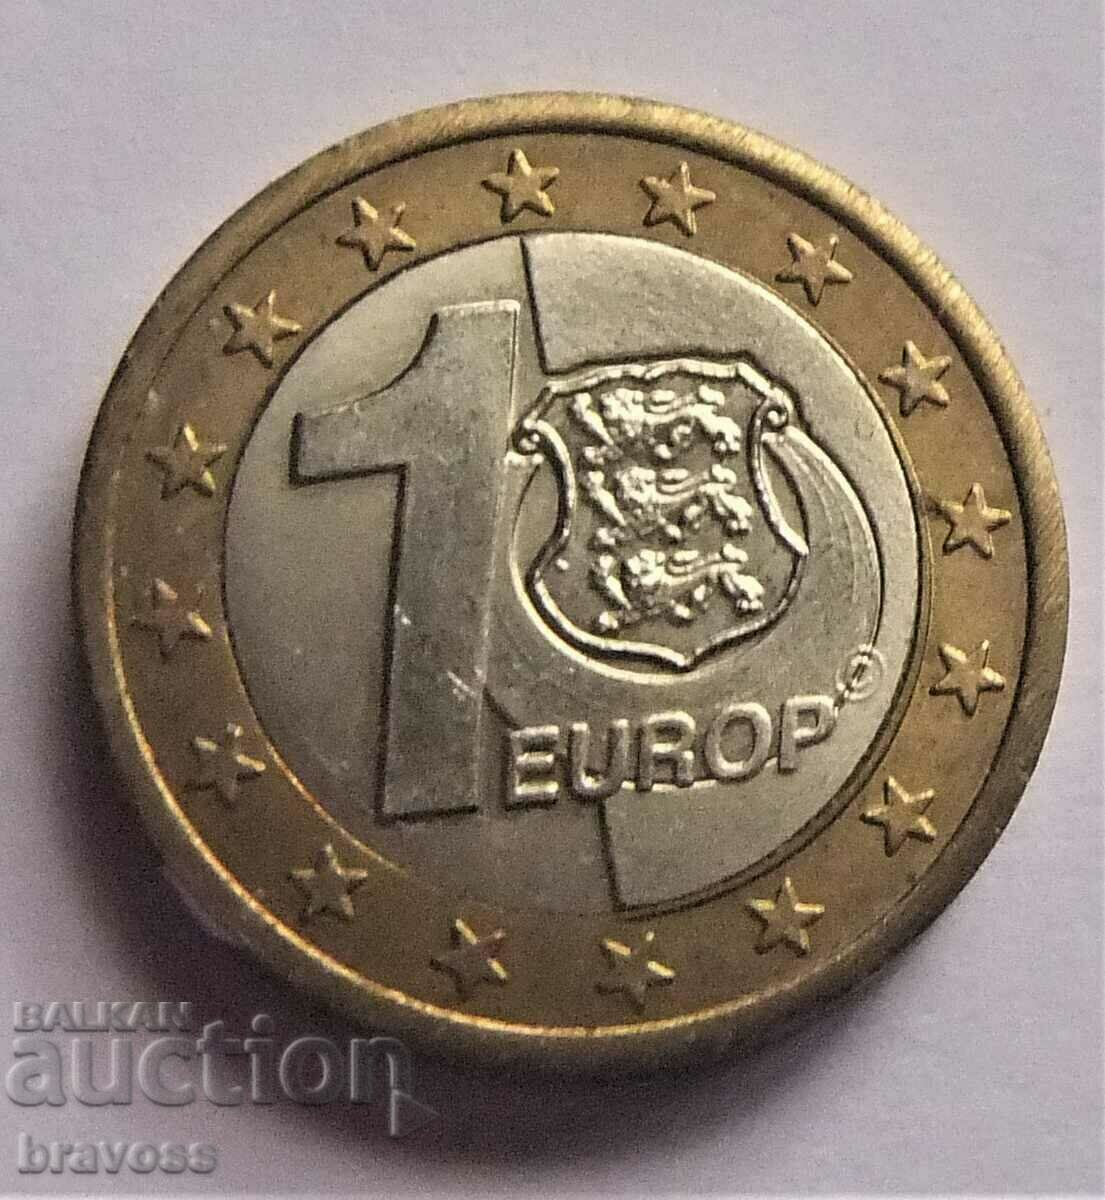 Estonia - 1 euro 2010 - sample